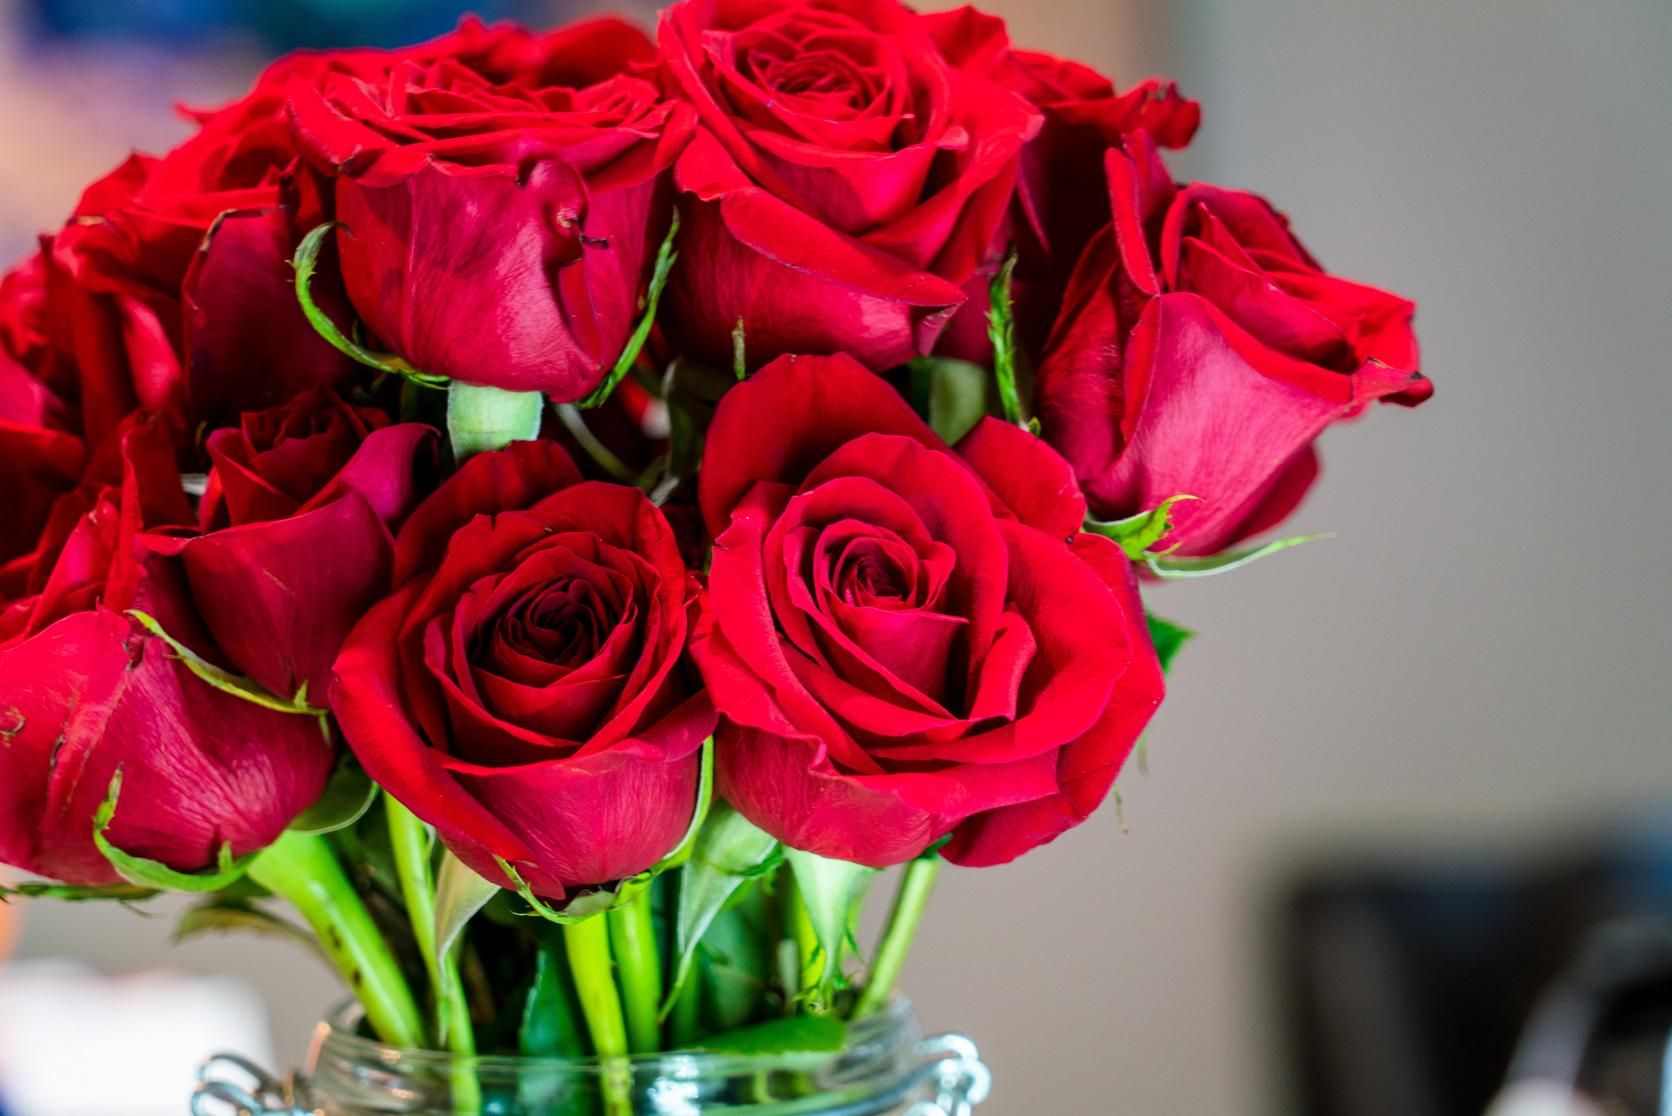 Red_roses_in_vase